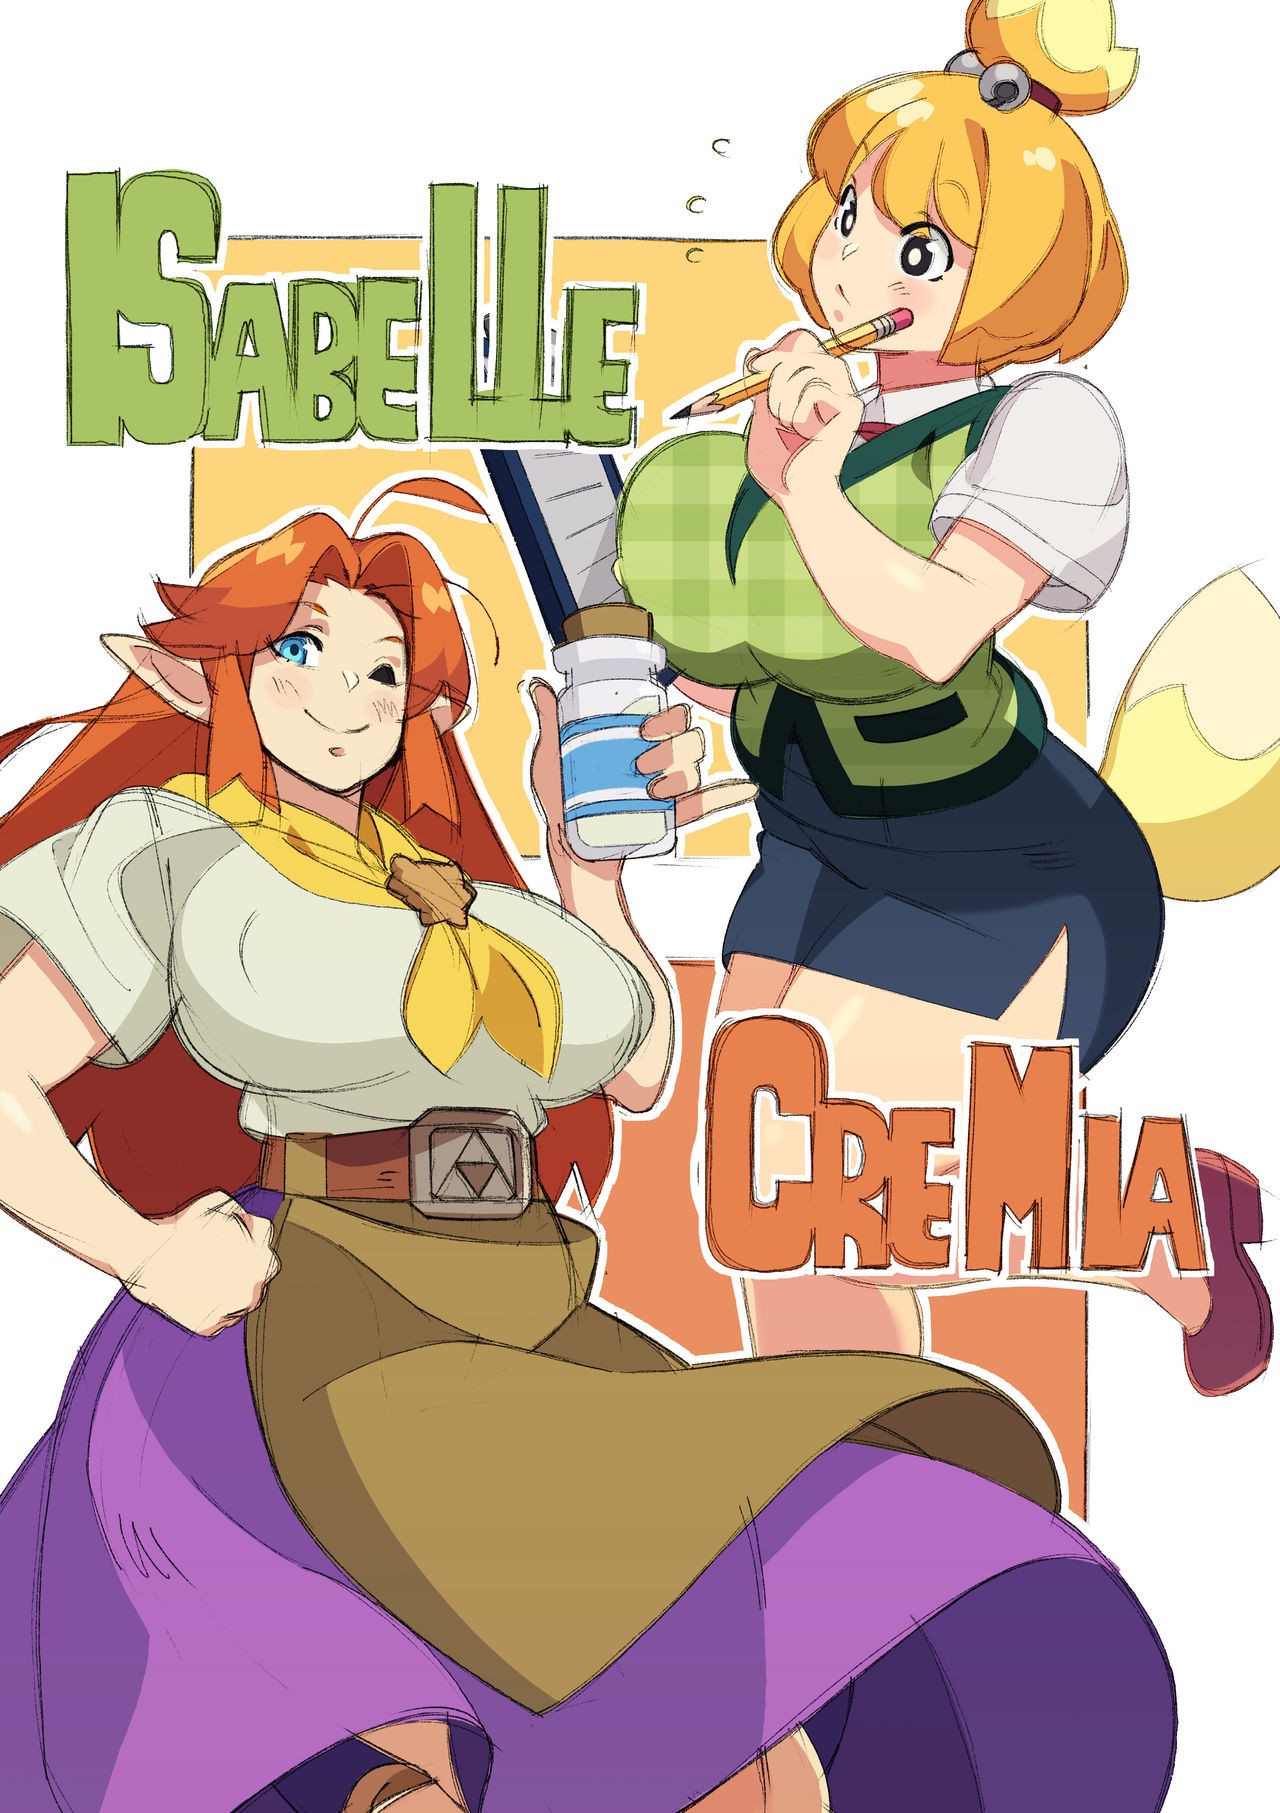 Cremia’s Milk Delivery! Porn Comic english 15